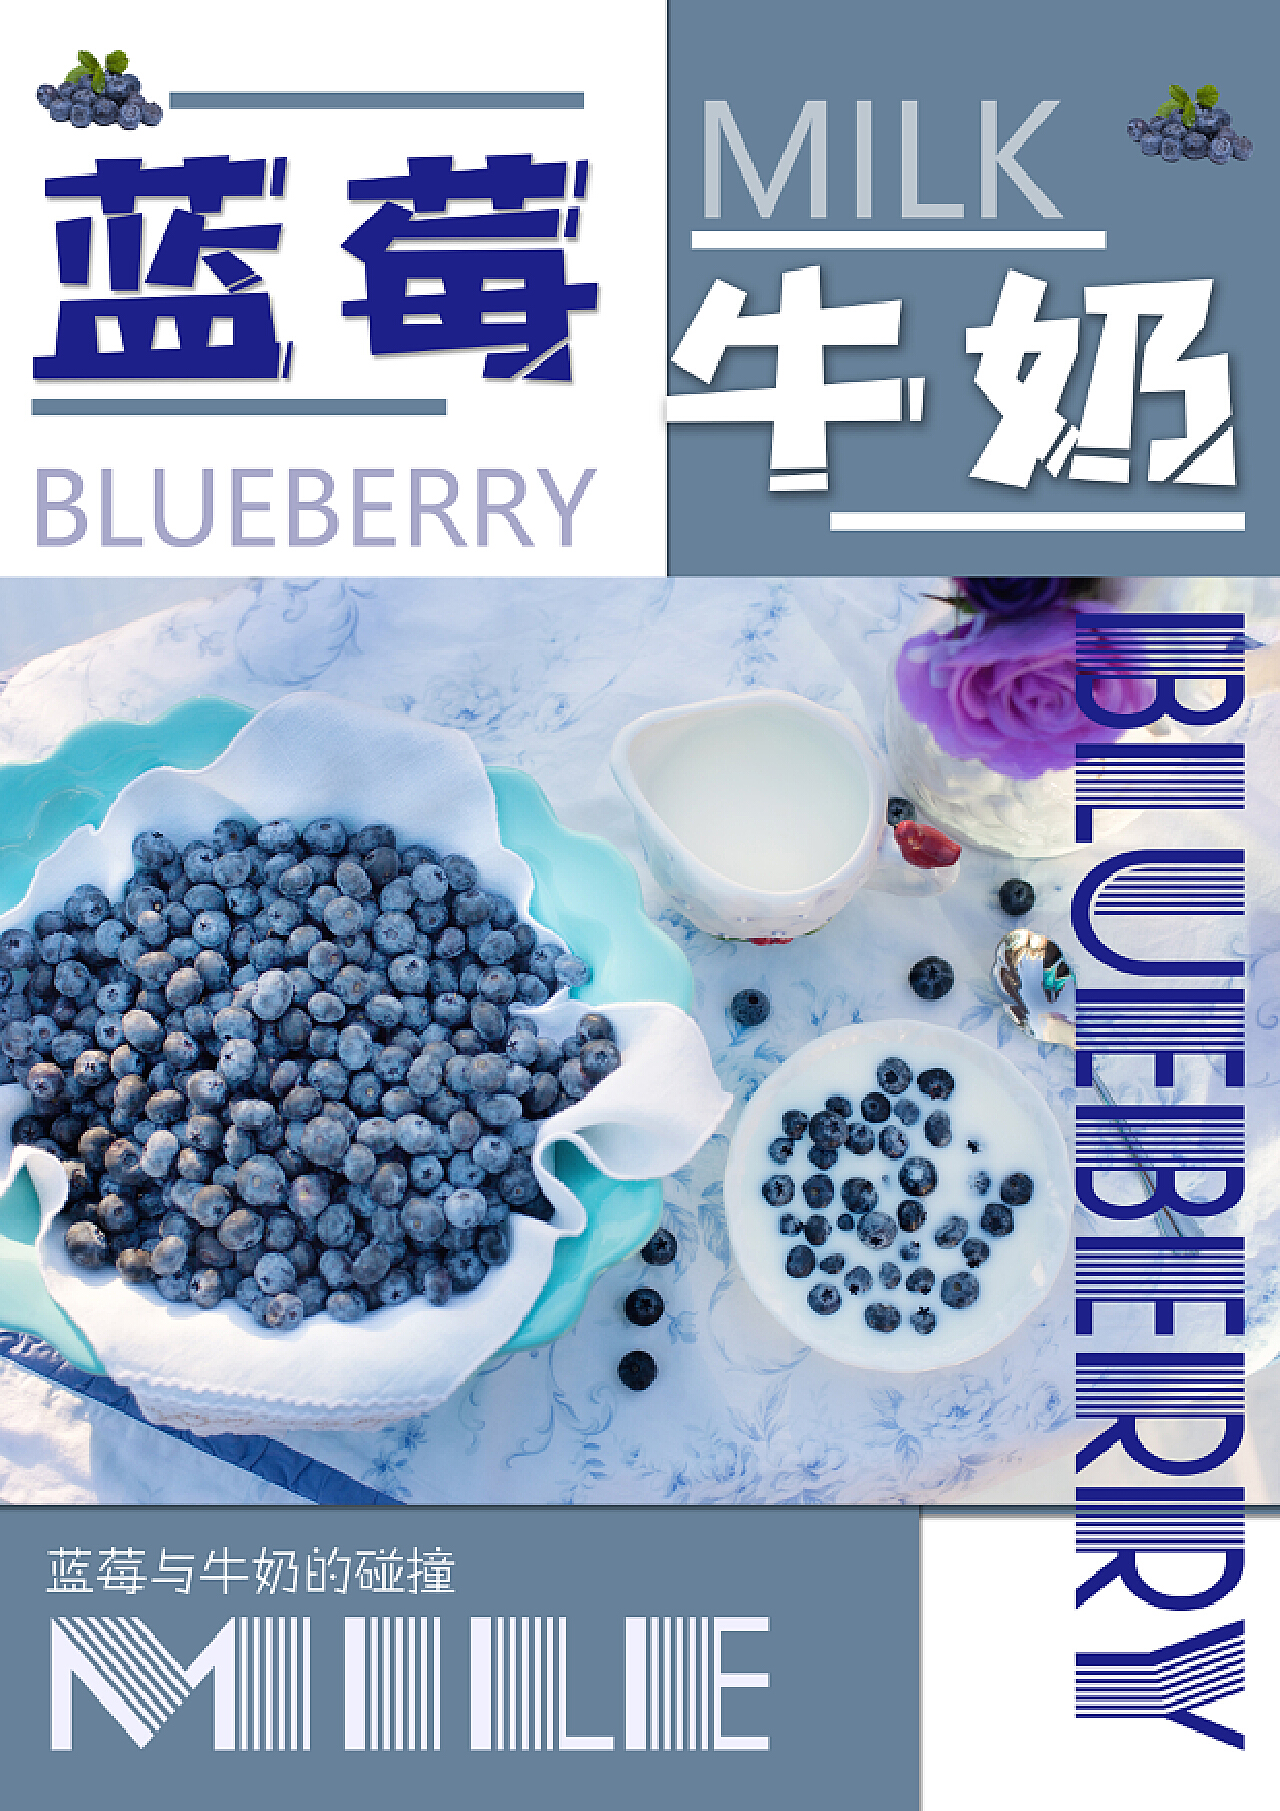 清清淡淡的蓝莓酸奶幕斯 ——牛奶瓶装_蓝莓酸奶幕斯_多多丁的日志_美食天下